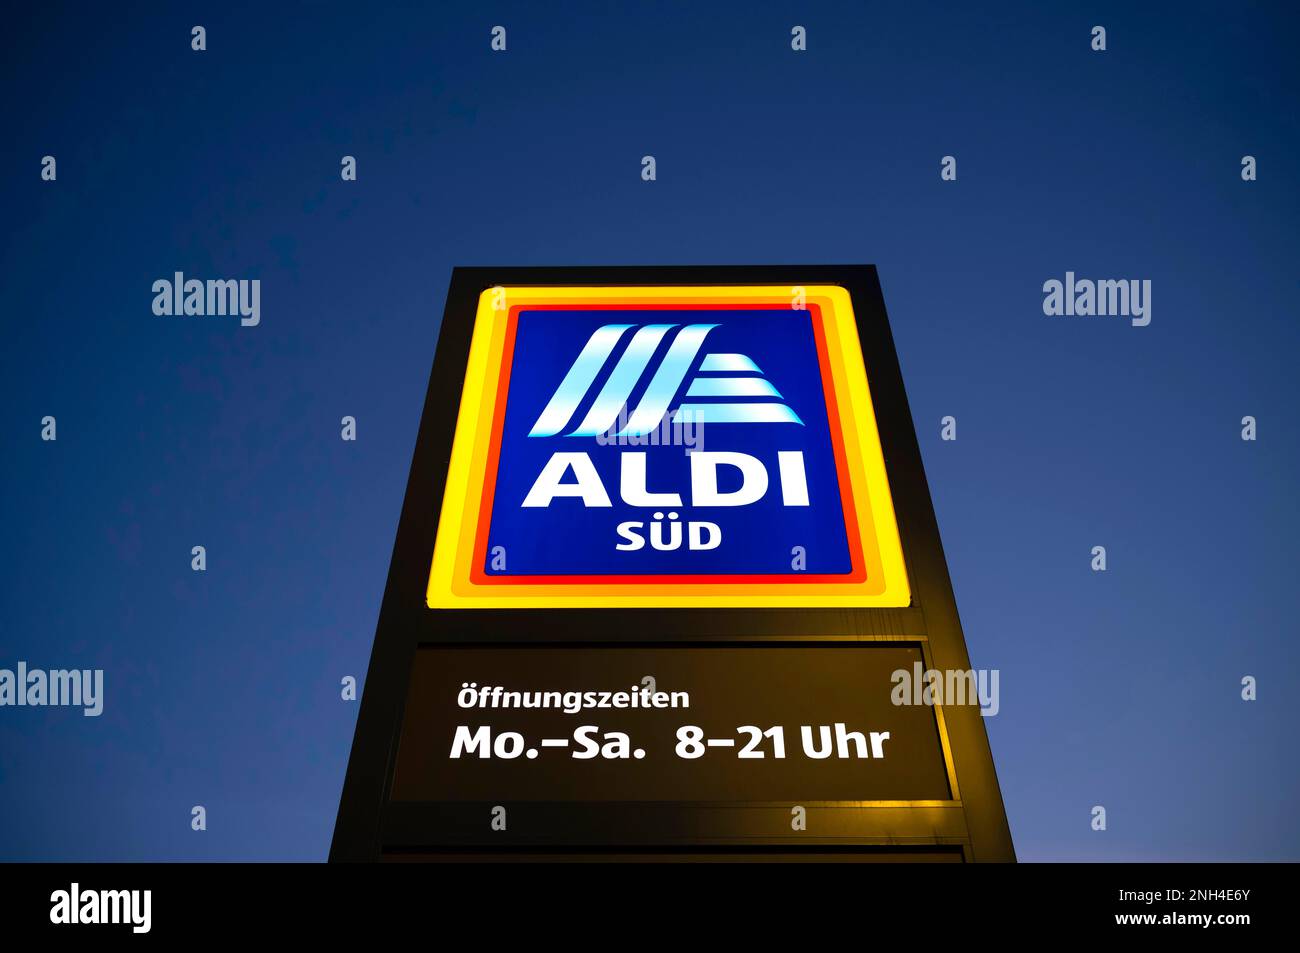 Heures d'ouverture ALDI Sued, chaîne de vente au détail, épicerie, logo sur l'affiche, heure bleue, Stuttgart, Bade-Wurtemberg, Allemagne Banque D'Images